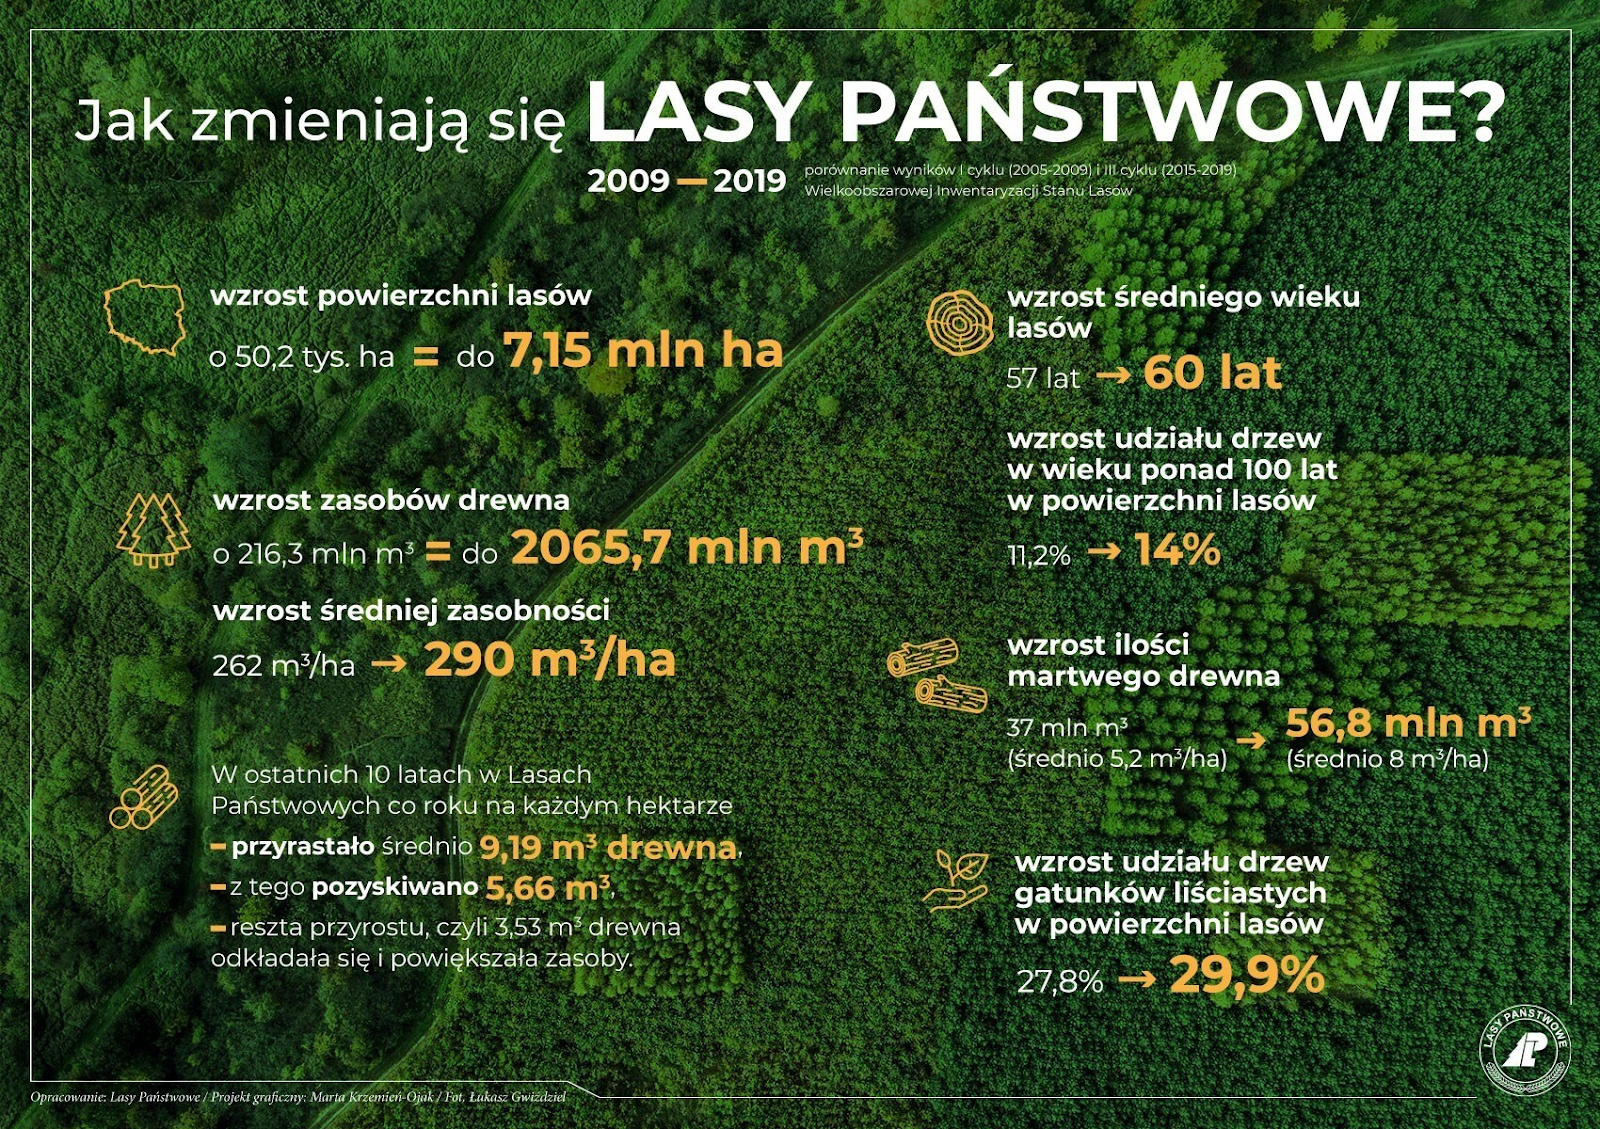 Grafika przedstawia zmiany w Lasach Państwowych w latach 2009-2019. Źródło CILP.